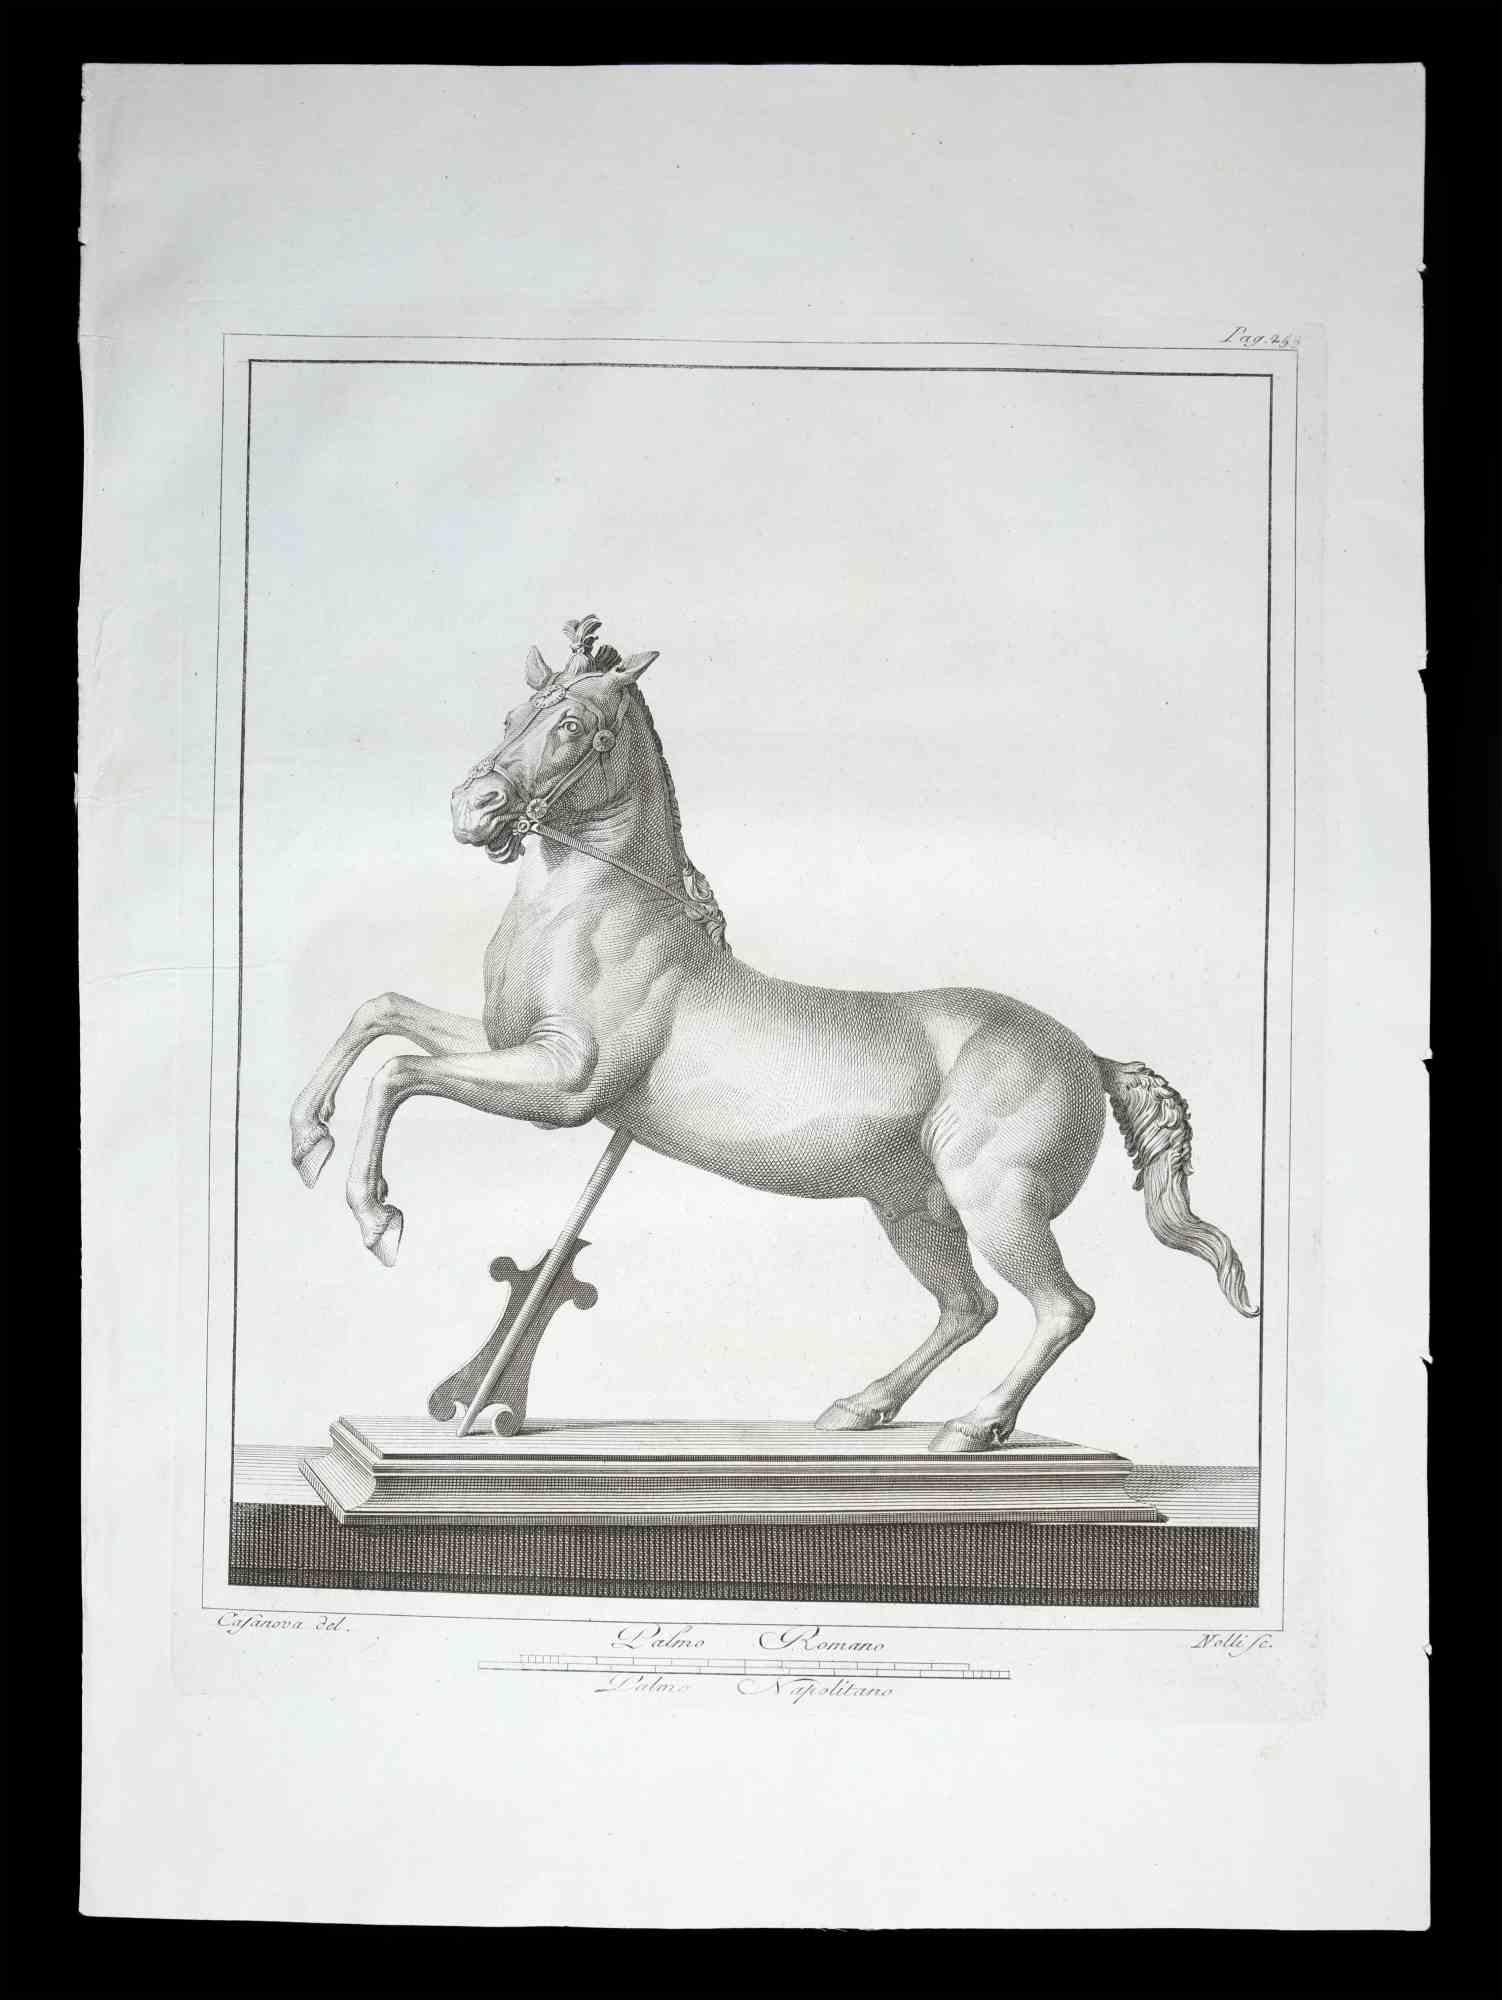 Statue romaine antique d'un cheval, de la série "Antiquités d'Herculanum", est une gravure originale sur papier réalisée par Carlo Nolli au 18ème siècle.

Signé sur la plaque, en bas à droite.

Bon état, sauf quelques pliures et rousseurs.

La